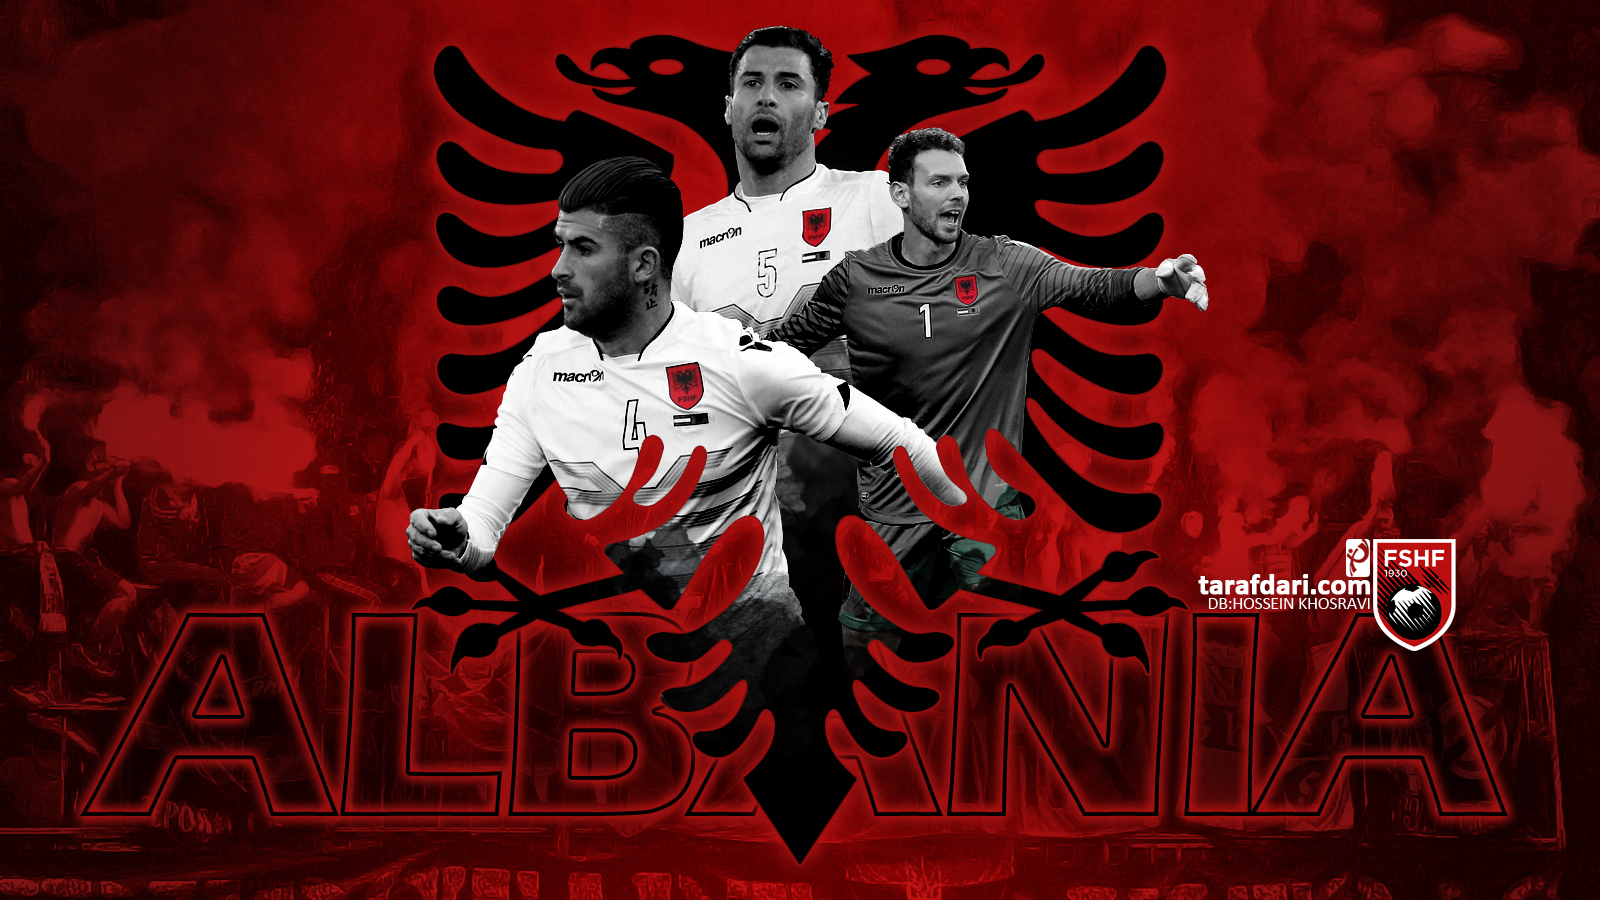 شماره پیراهن بازیکنان تیم ملی آلبانی برای یورو 2016